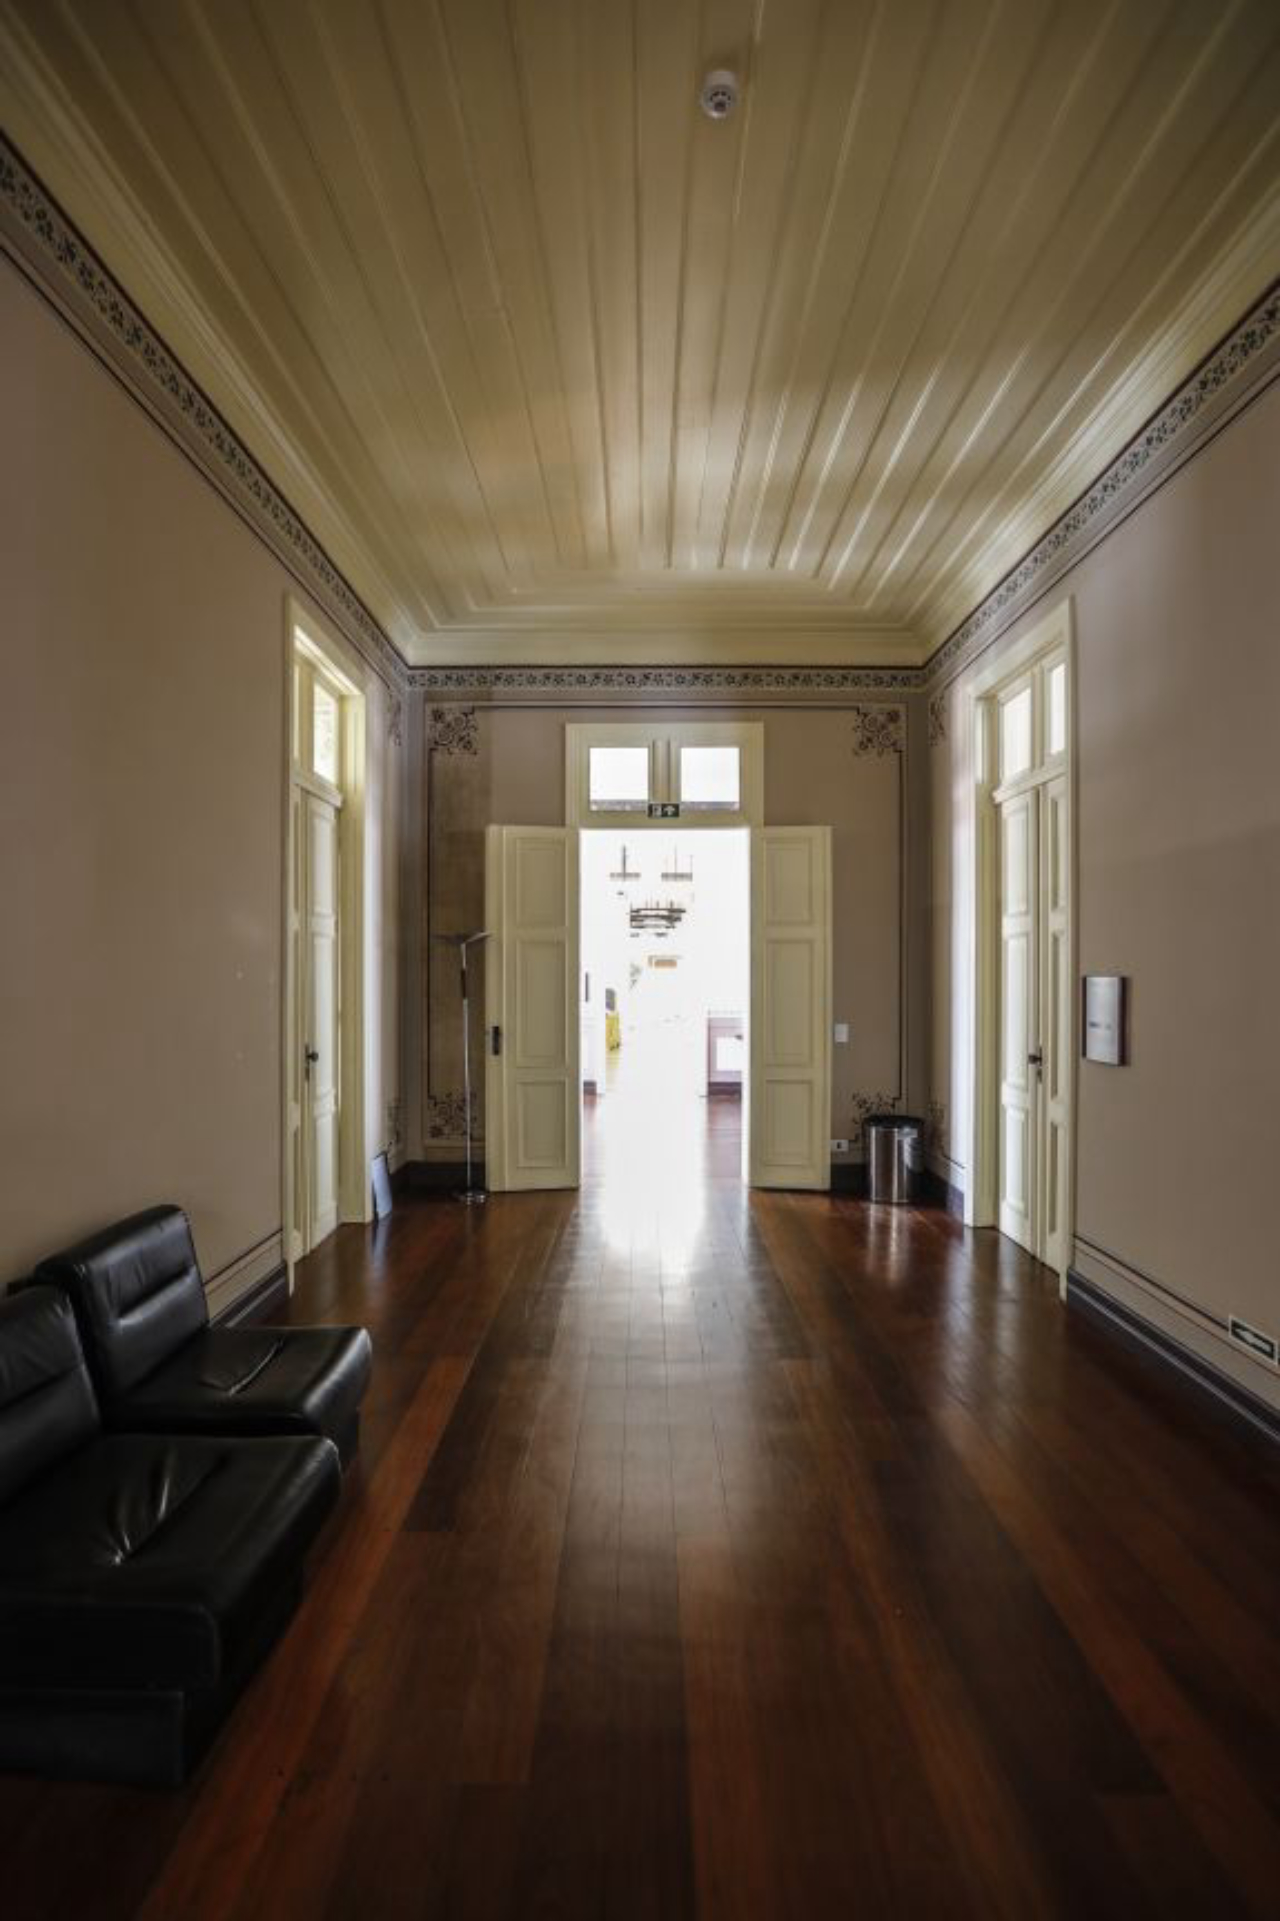 Segundo Maiolino, o piso do primeiro andar da Casa Rosada estava afundando com o peso de arquivos colocados indevidamente. Situação já está normalizada. Foto: Jonathan Campos/Gazeta do Povo